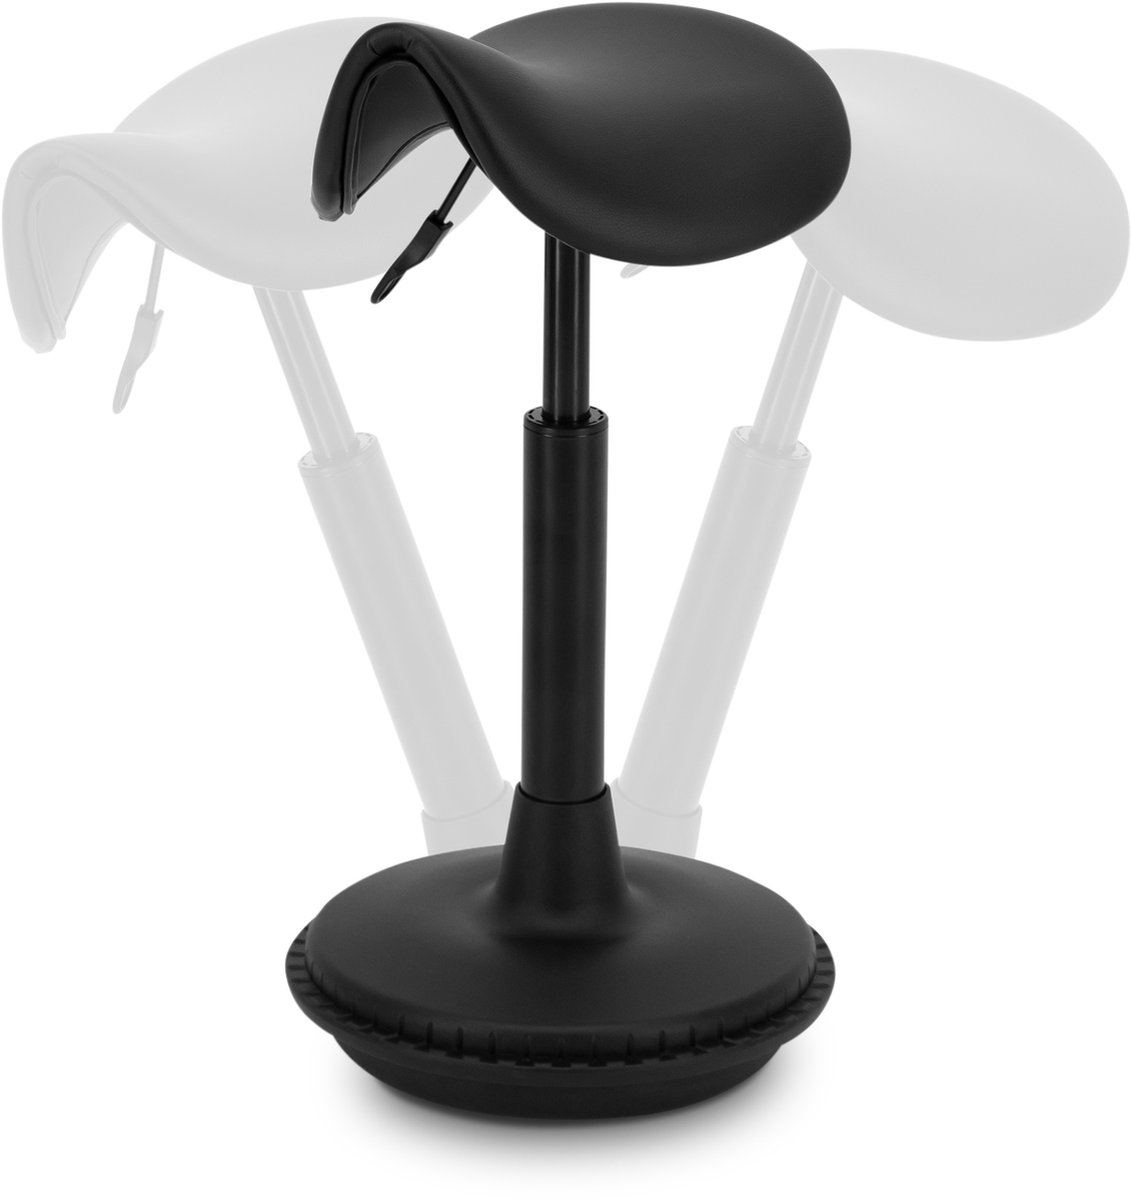 Wobblez® Zadelkruk - Ergonomische Bureaustoel voor Bureaus met een hoogte 60-80 cm - Wiebelkruk in hoogte verstelbaar van 43-63 cm - Zwarte zadelkruk met Zwarte zitting